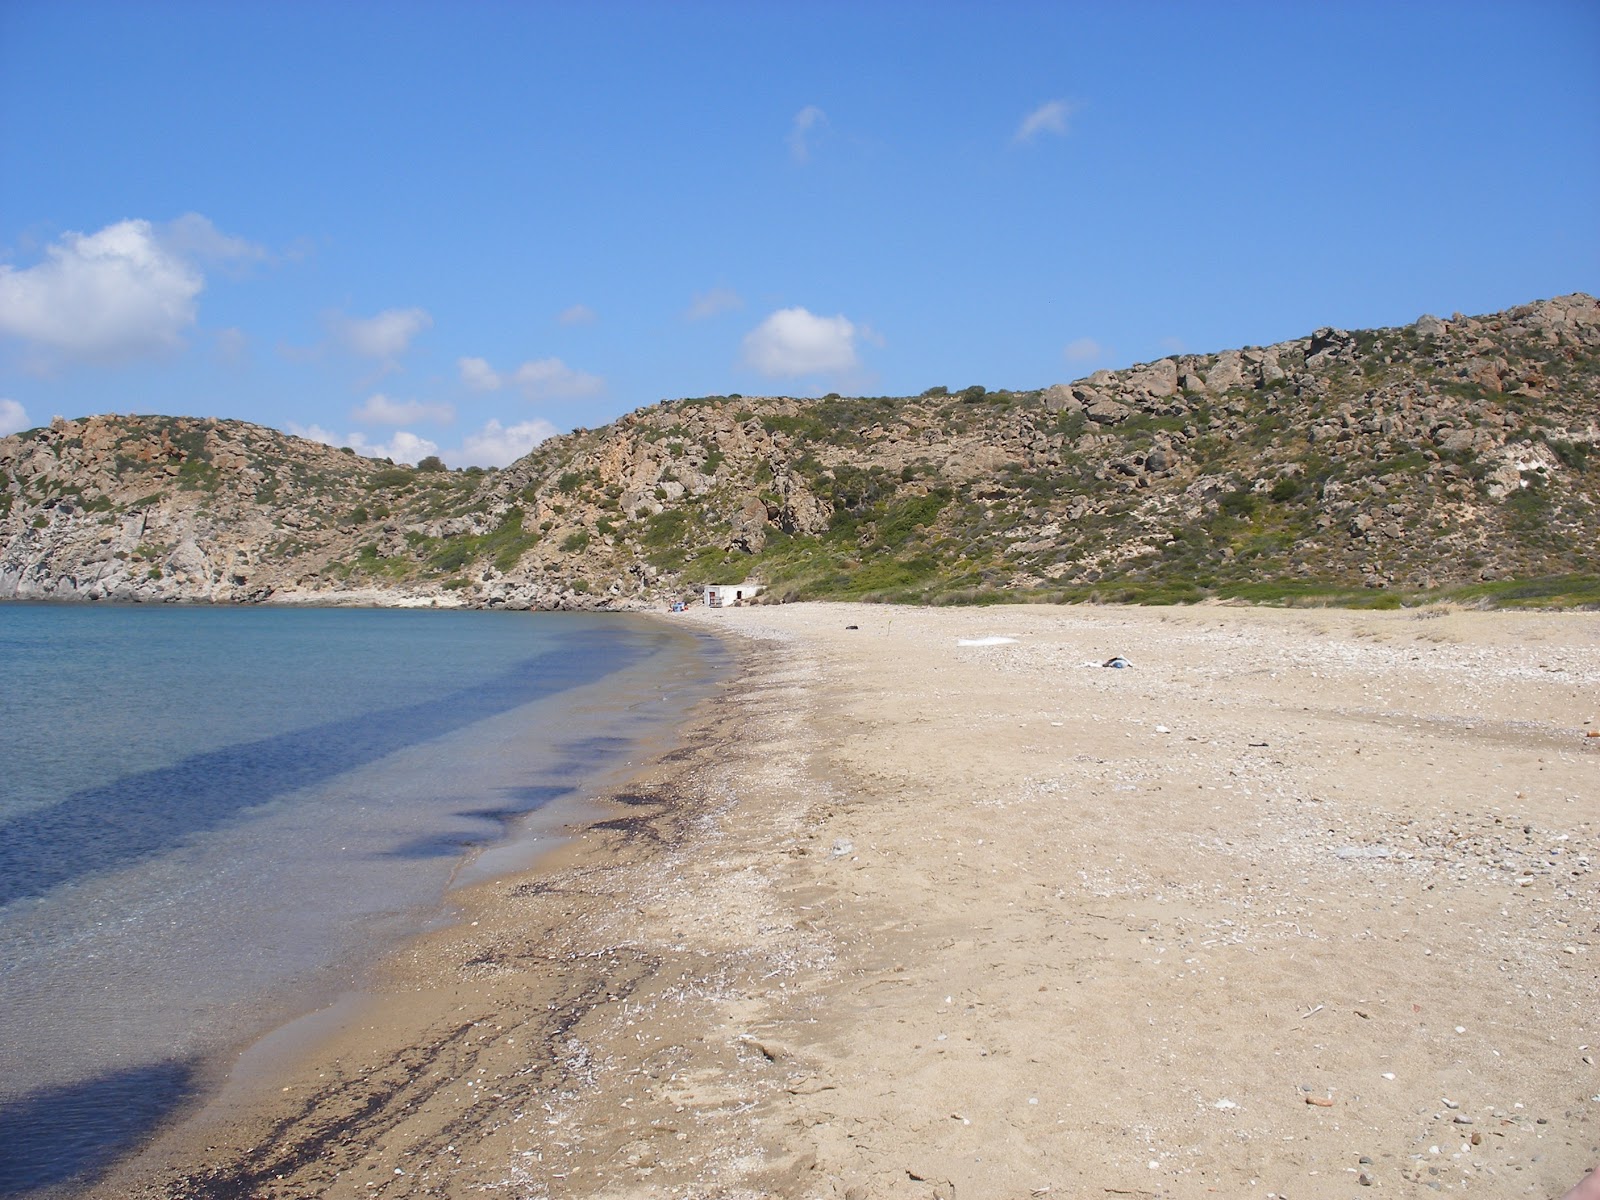 Fotografie cu Paralia Fatourena cu o suprafață de nisip maro